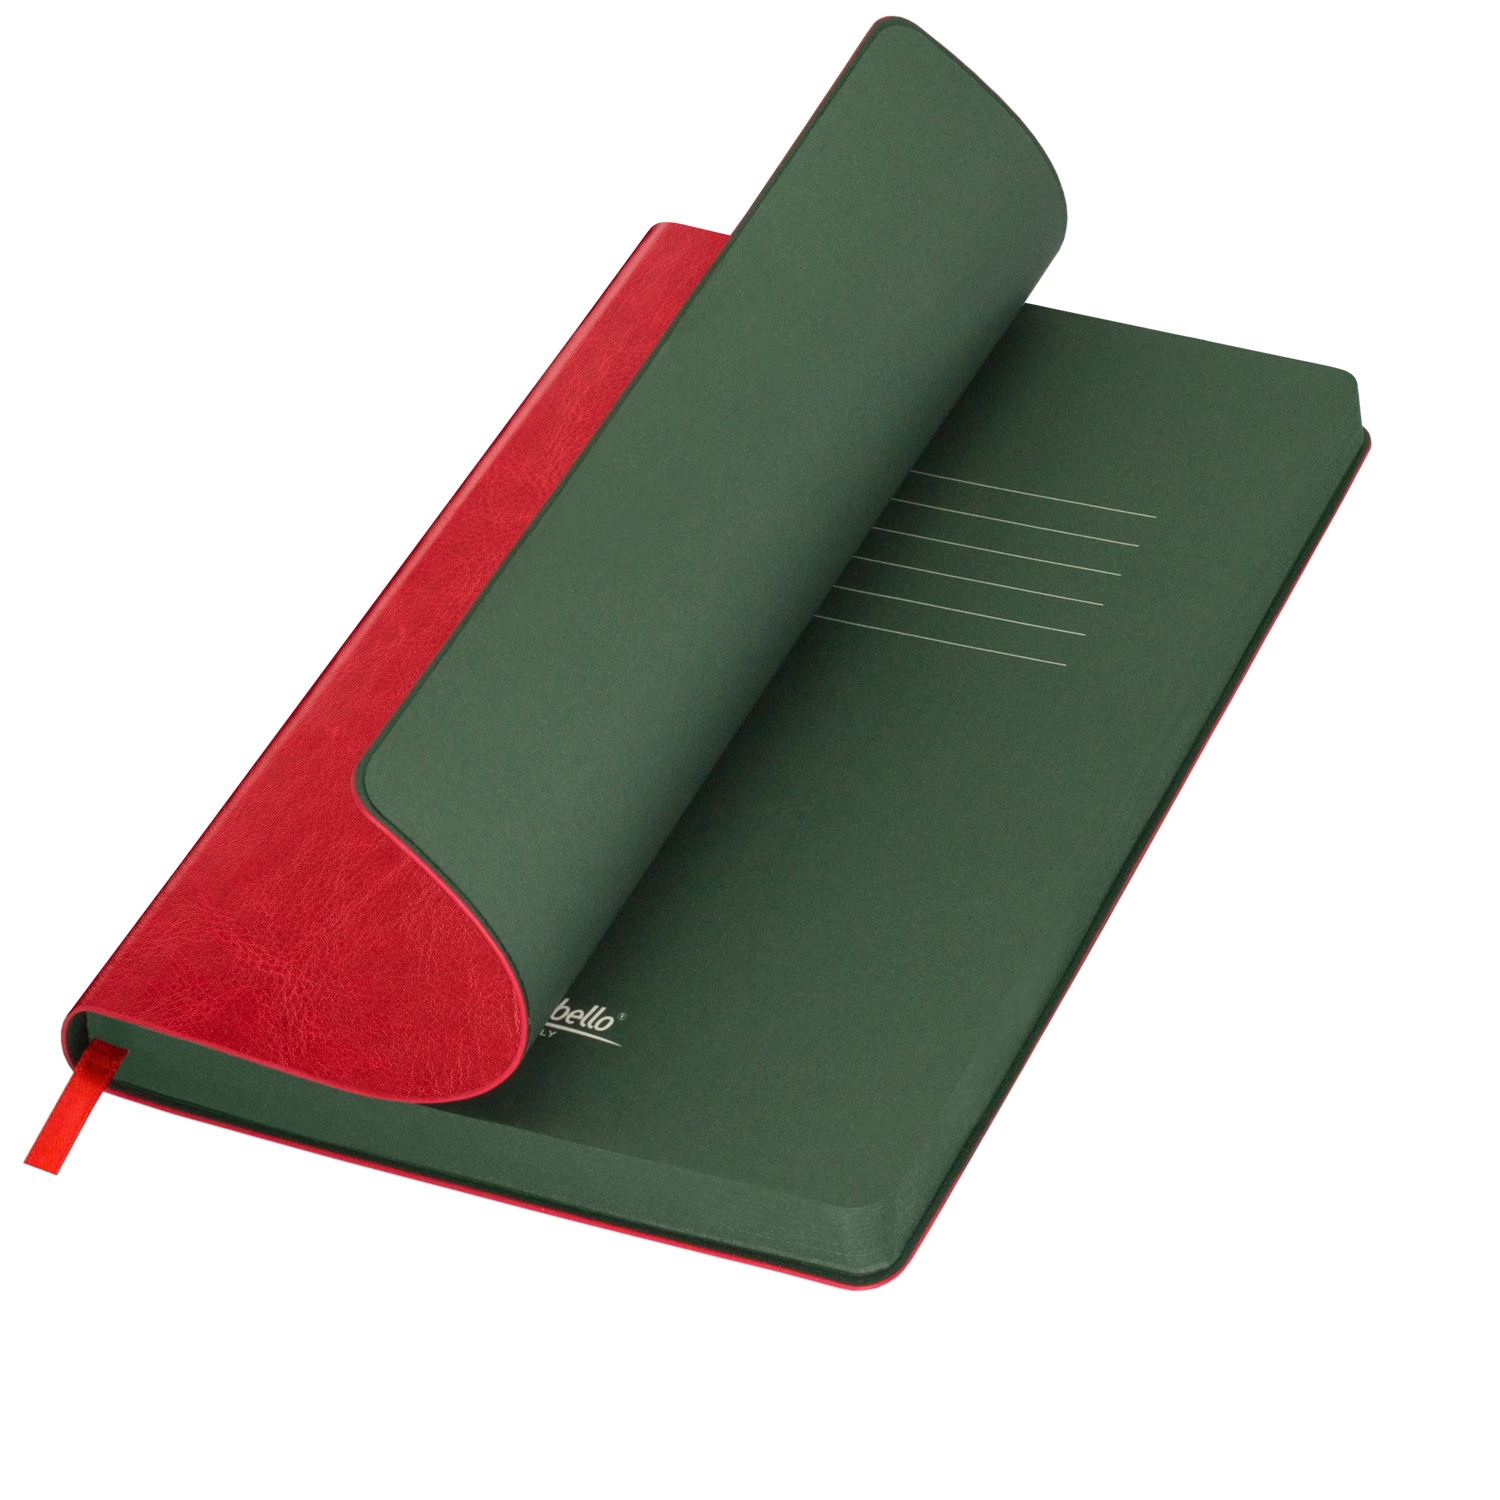 Ежедневник River side недатированный, красный/зеленый (без упаковки, без стикера), красный